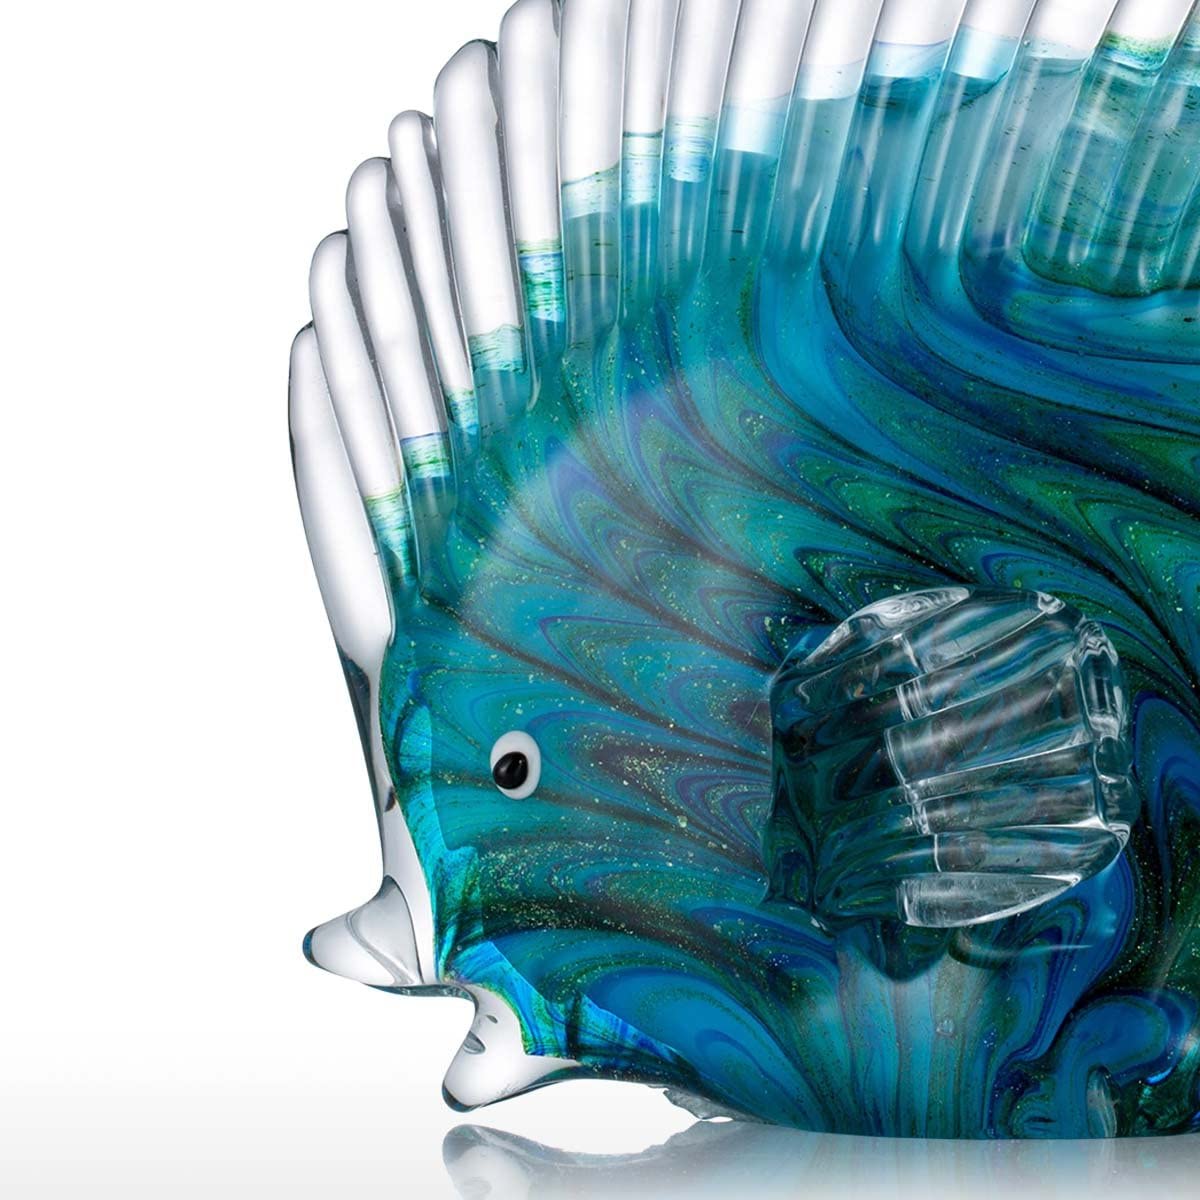 Glass Exotic Fish Sculpture (3 models)